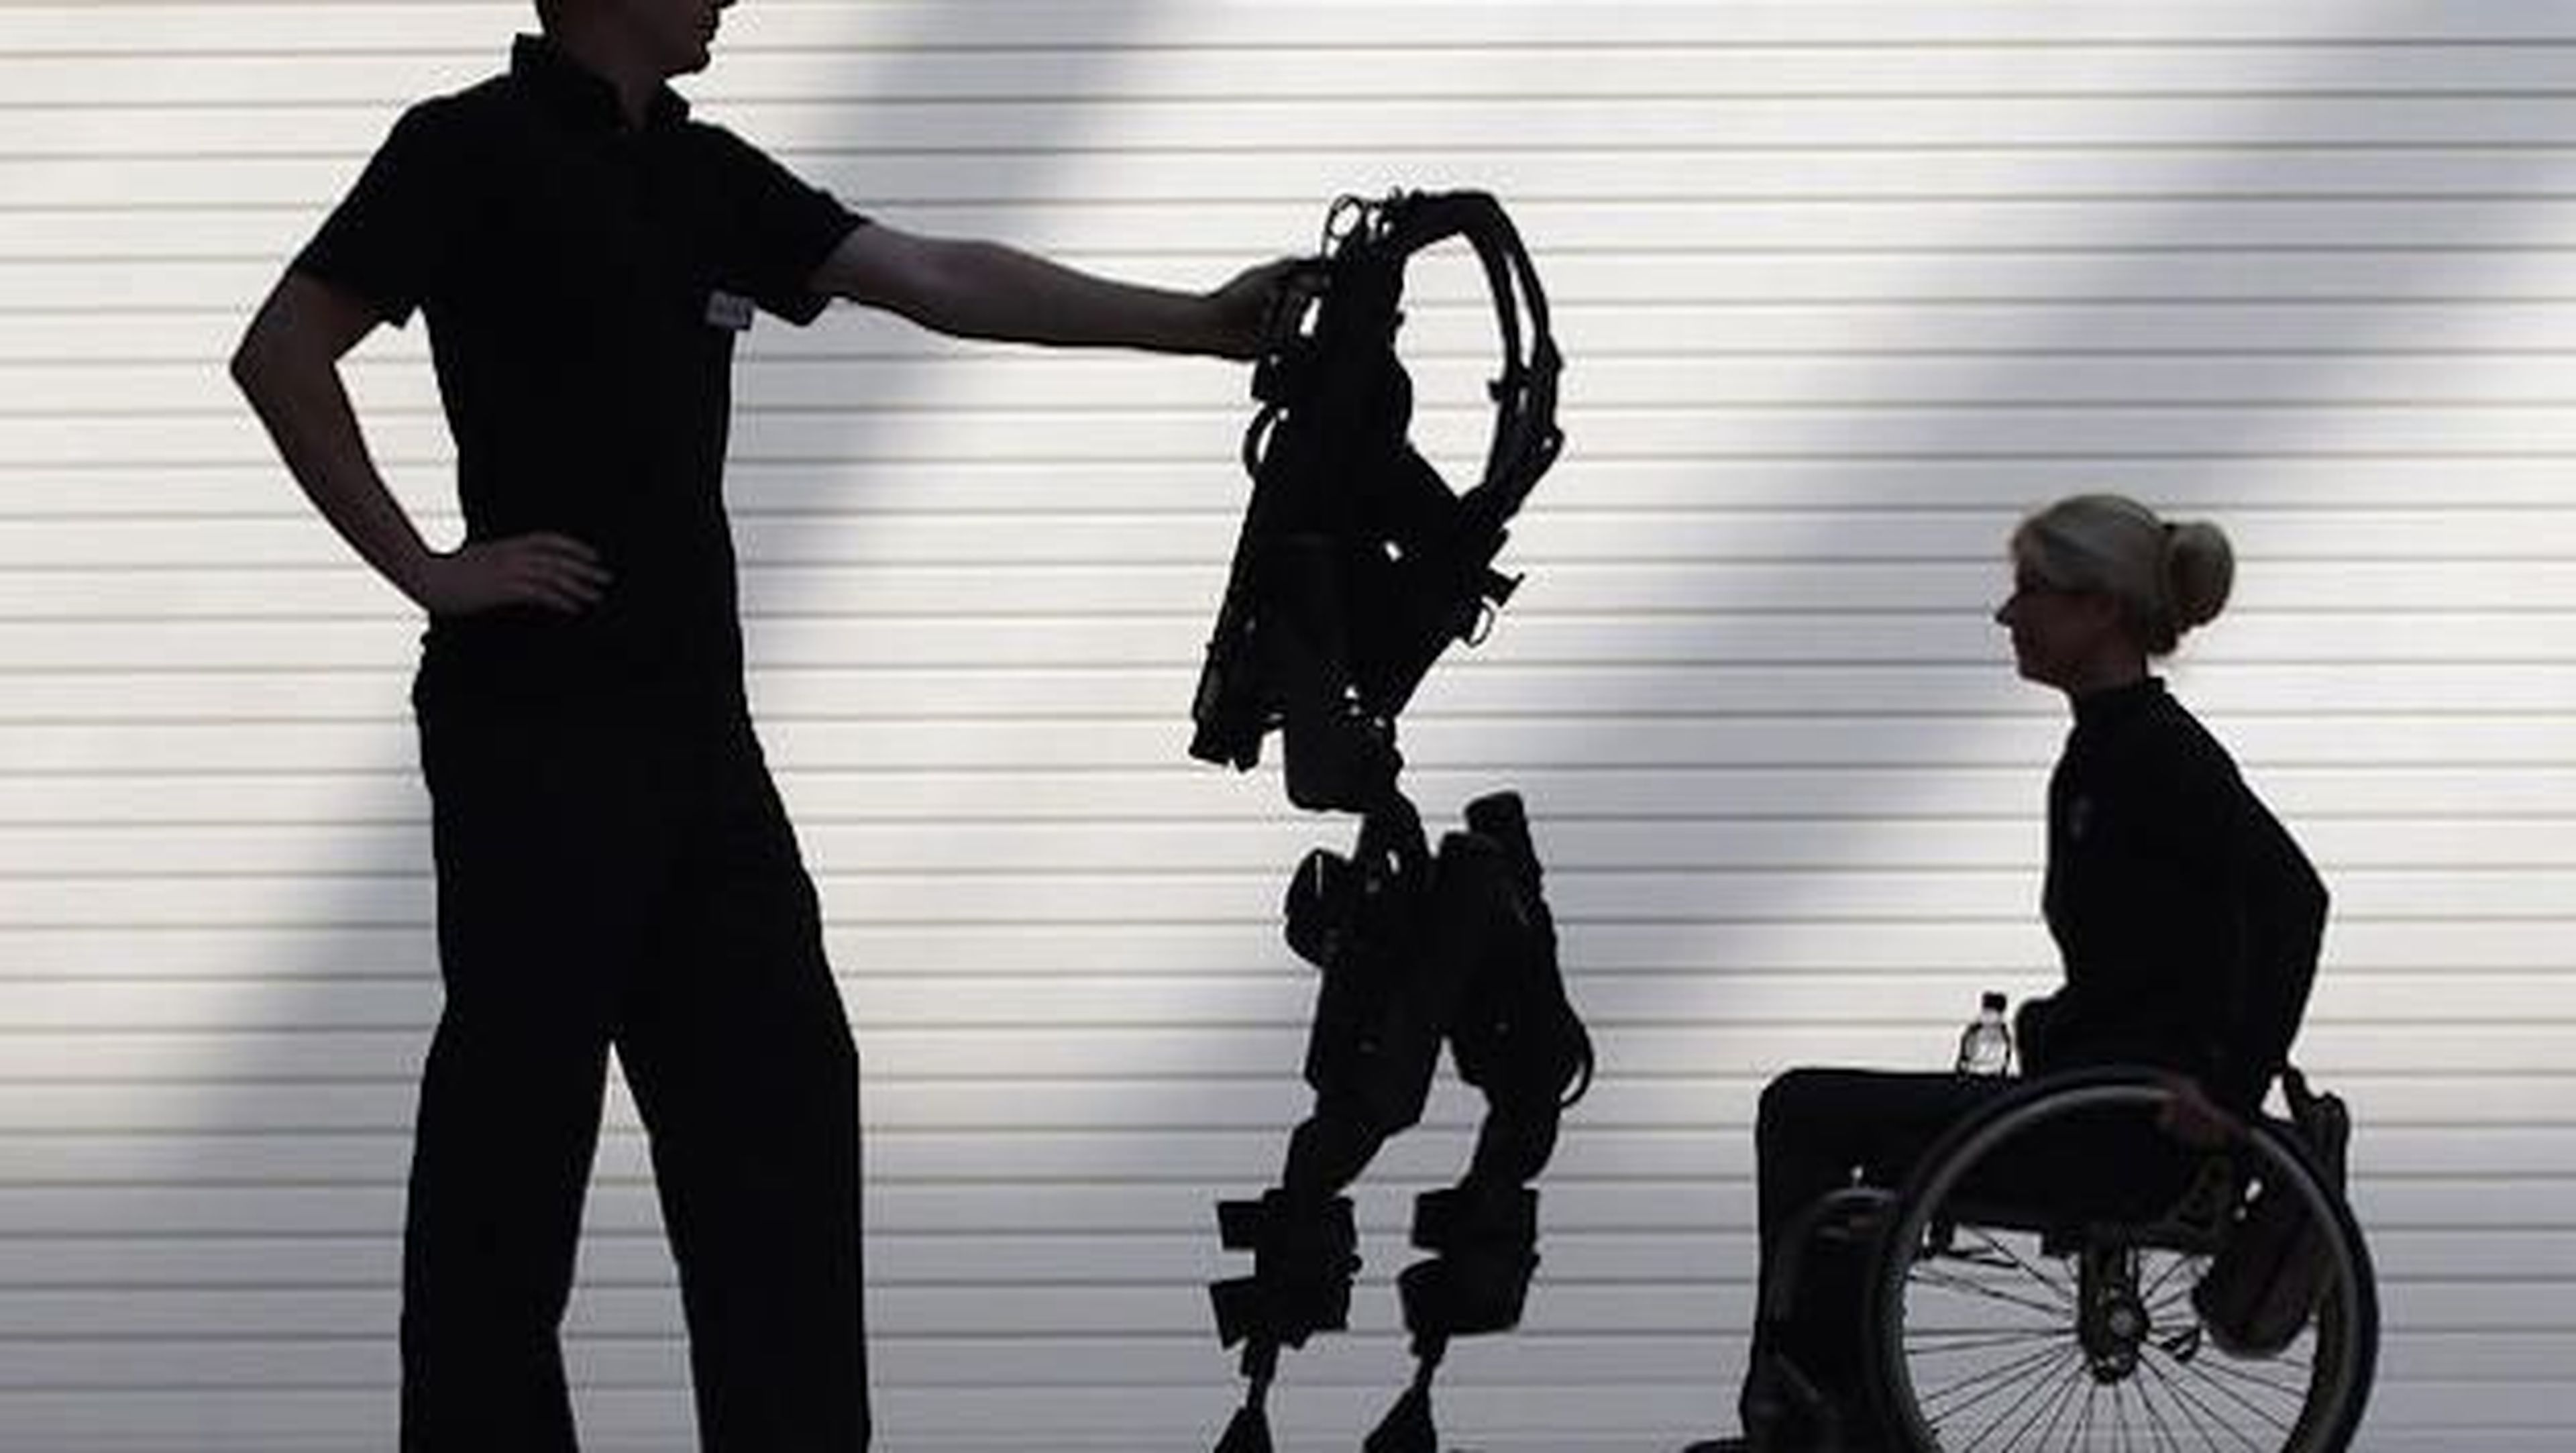 El exoesqueleto permite recuperar la movilidad a personas que están en silla de ruedas